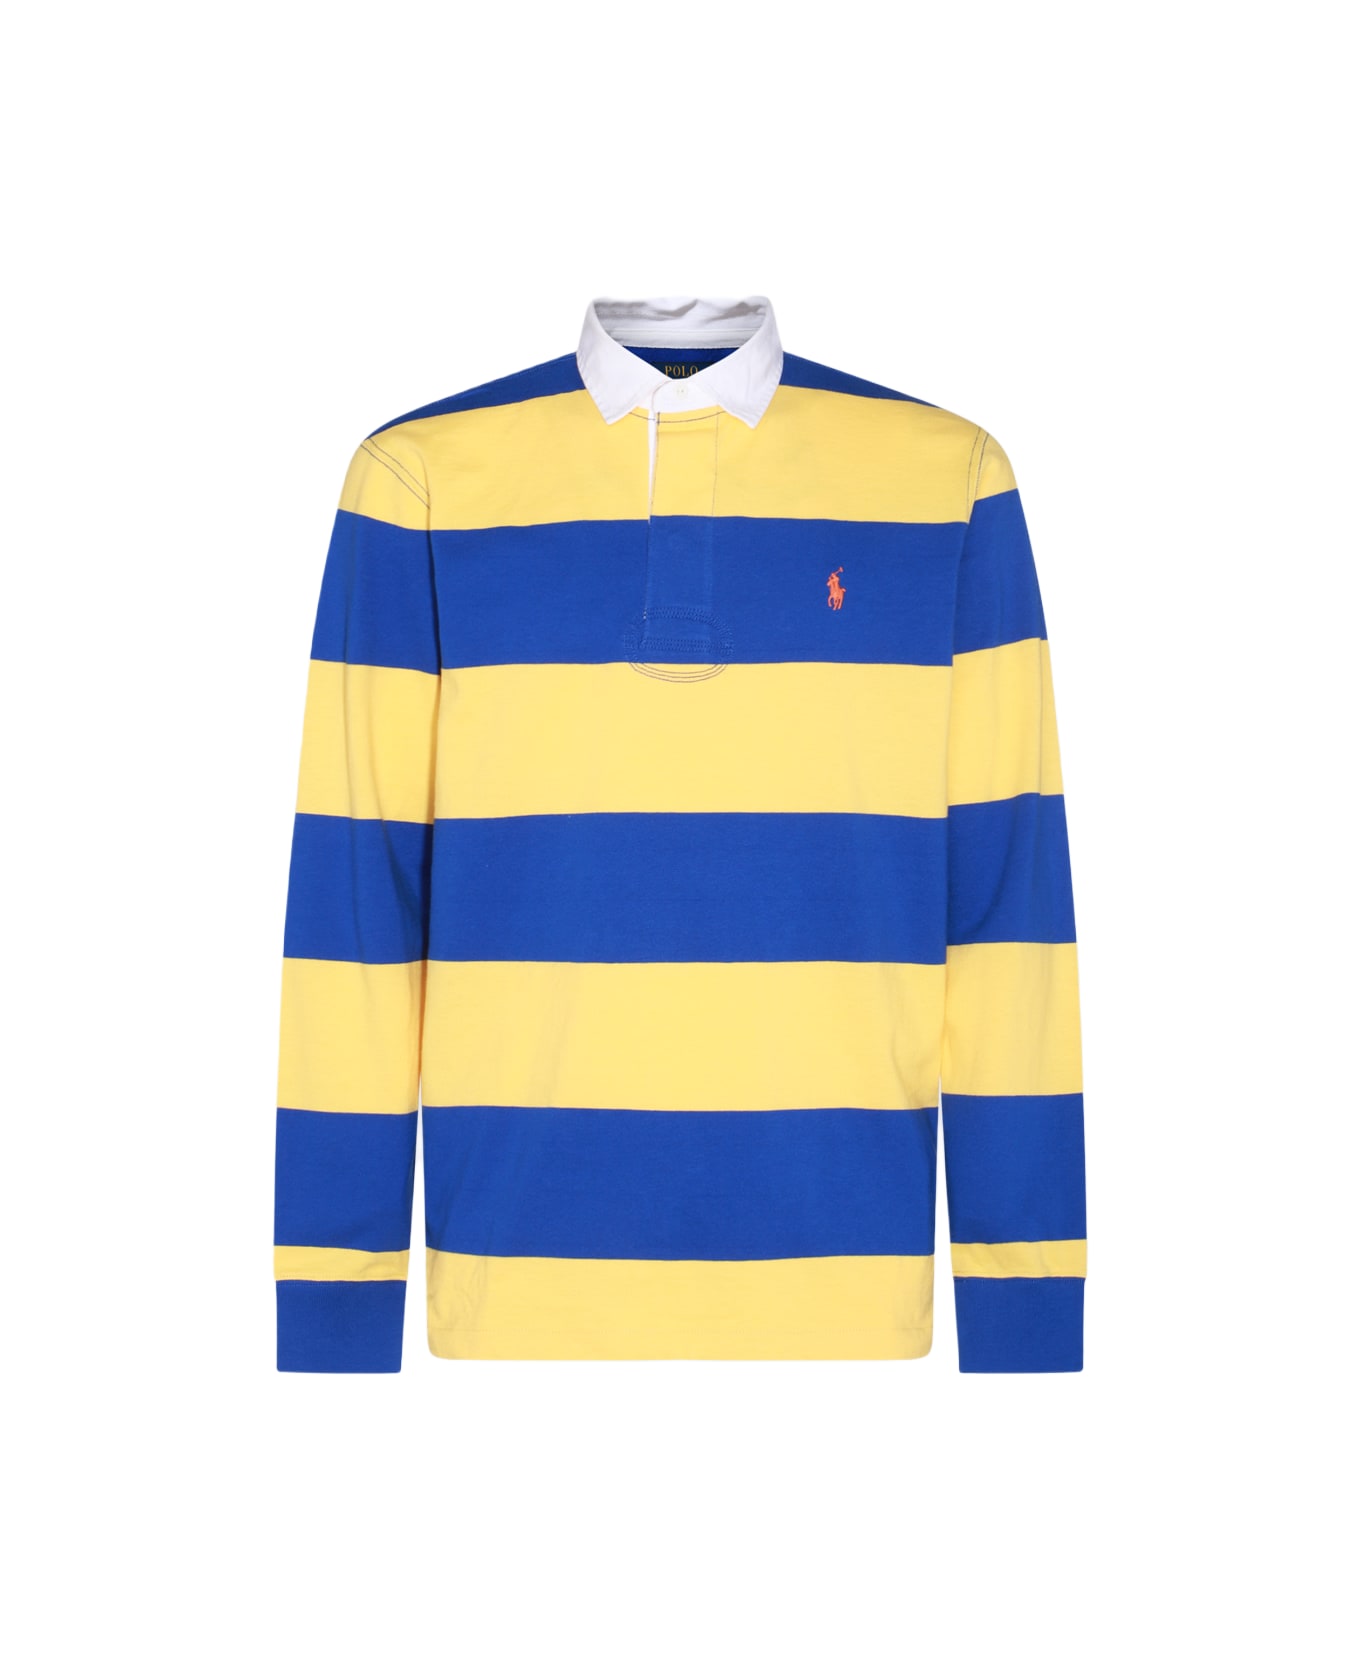 Polo Ralph Lauren Yellow And Blue Cotton Polo Shirt - Giallo